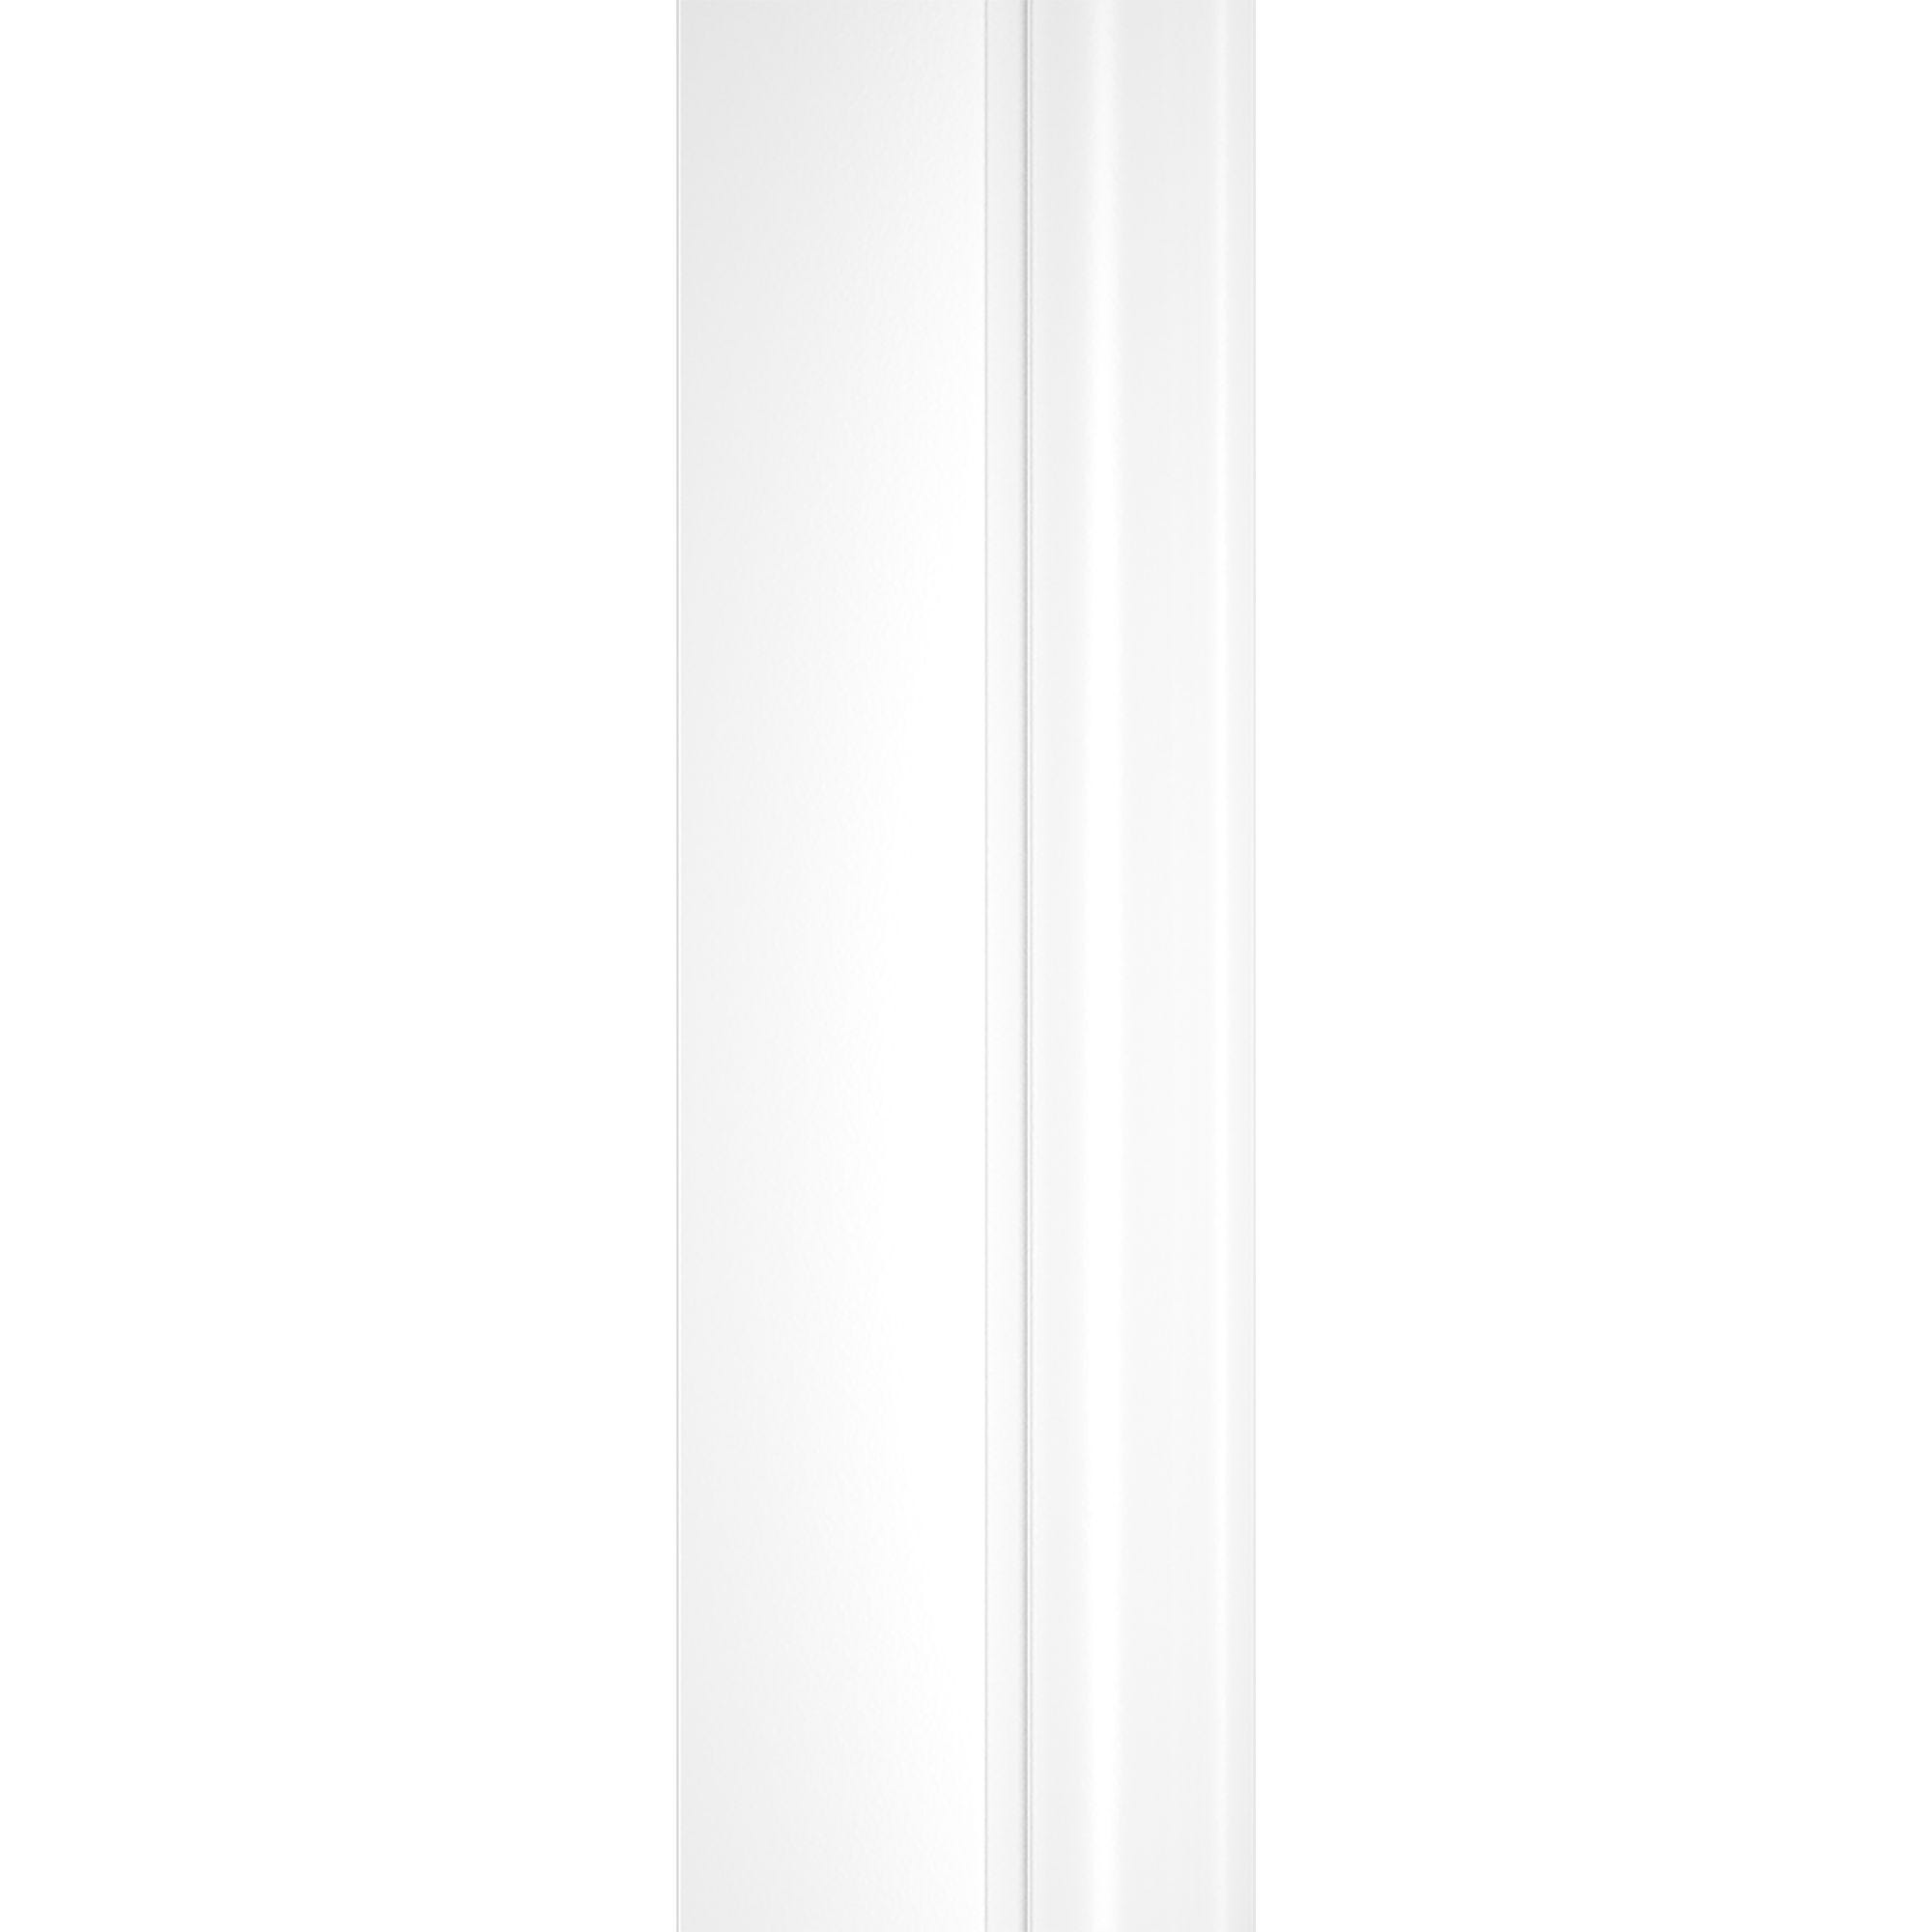 Schulte porte de douche 2 battants, porte de douche battante en niche, 80 x 180 cm, verre 5 mm transparent, blanc, traitement anticalcaire, Sunny 3